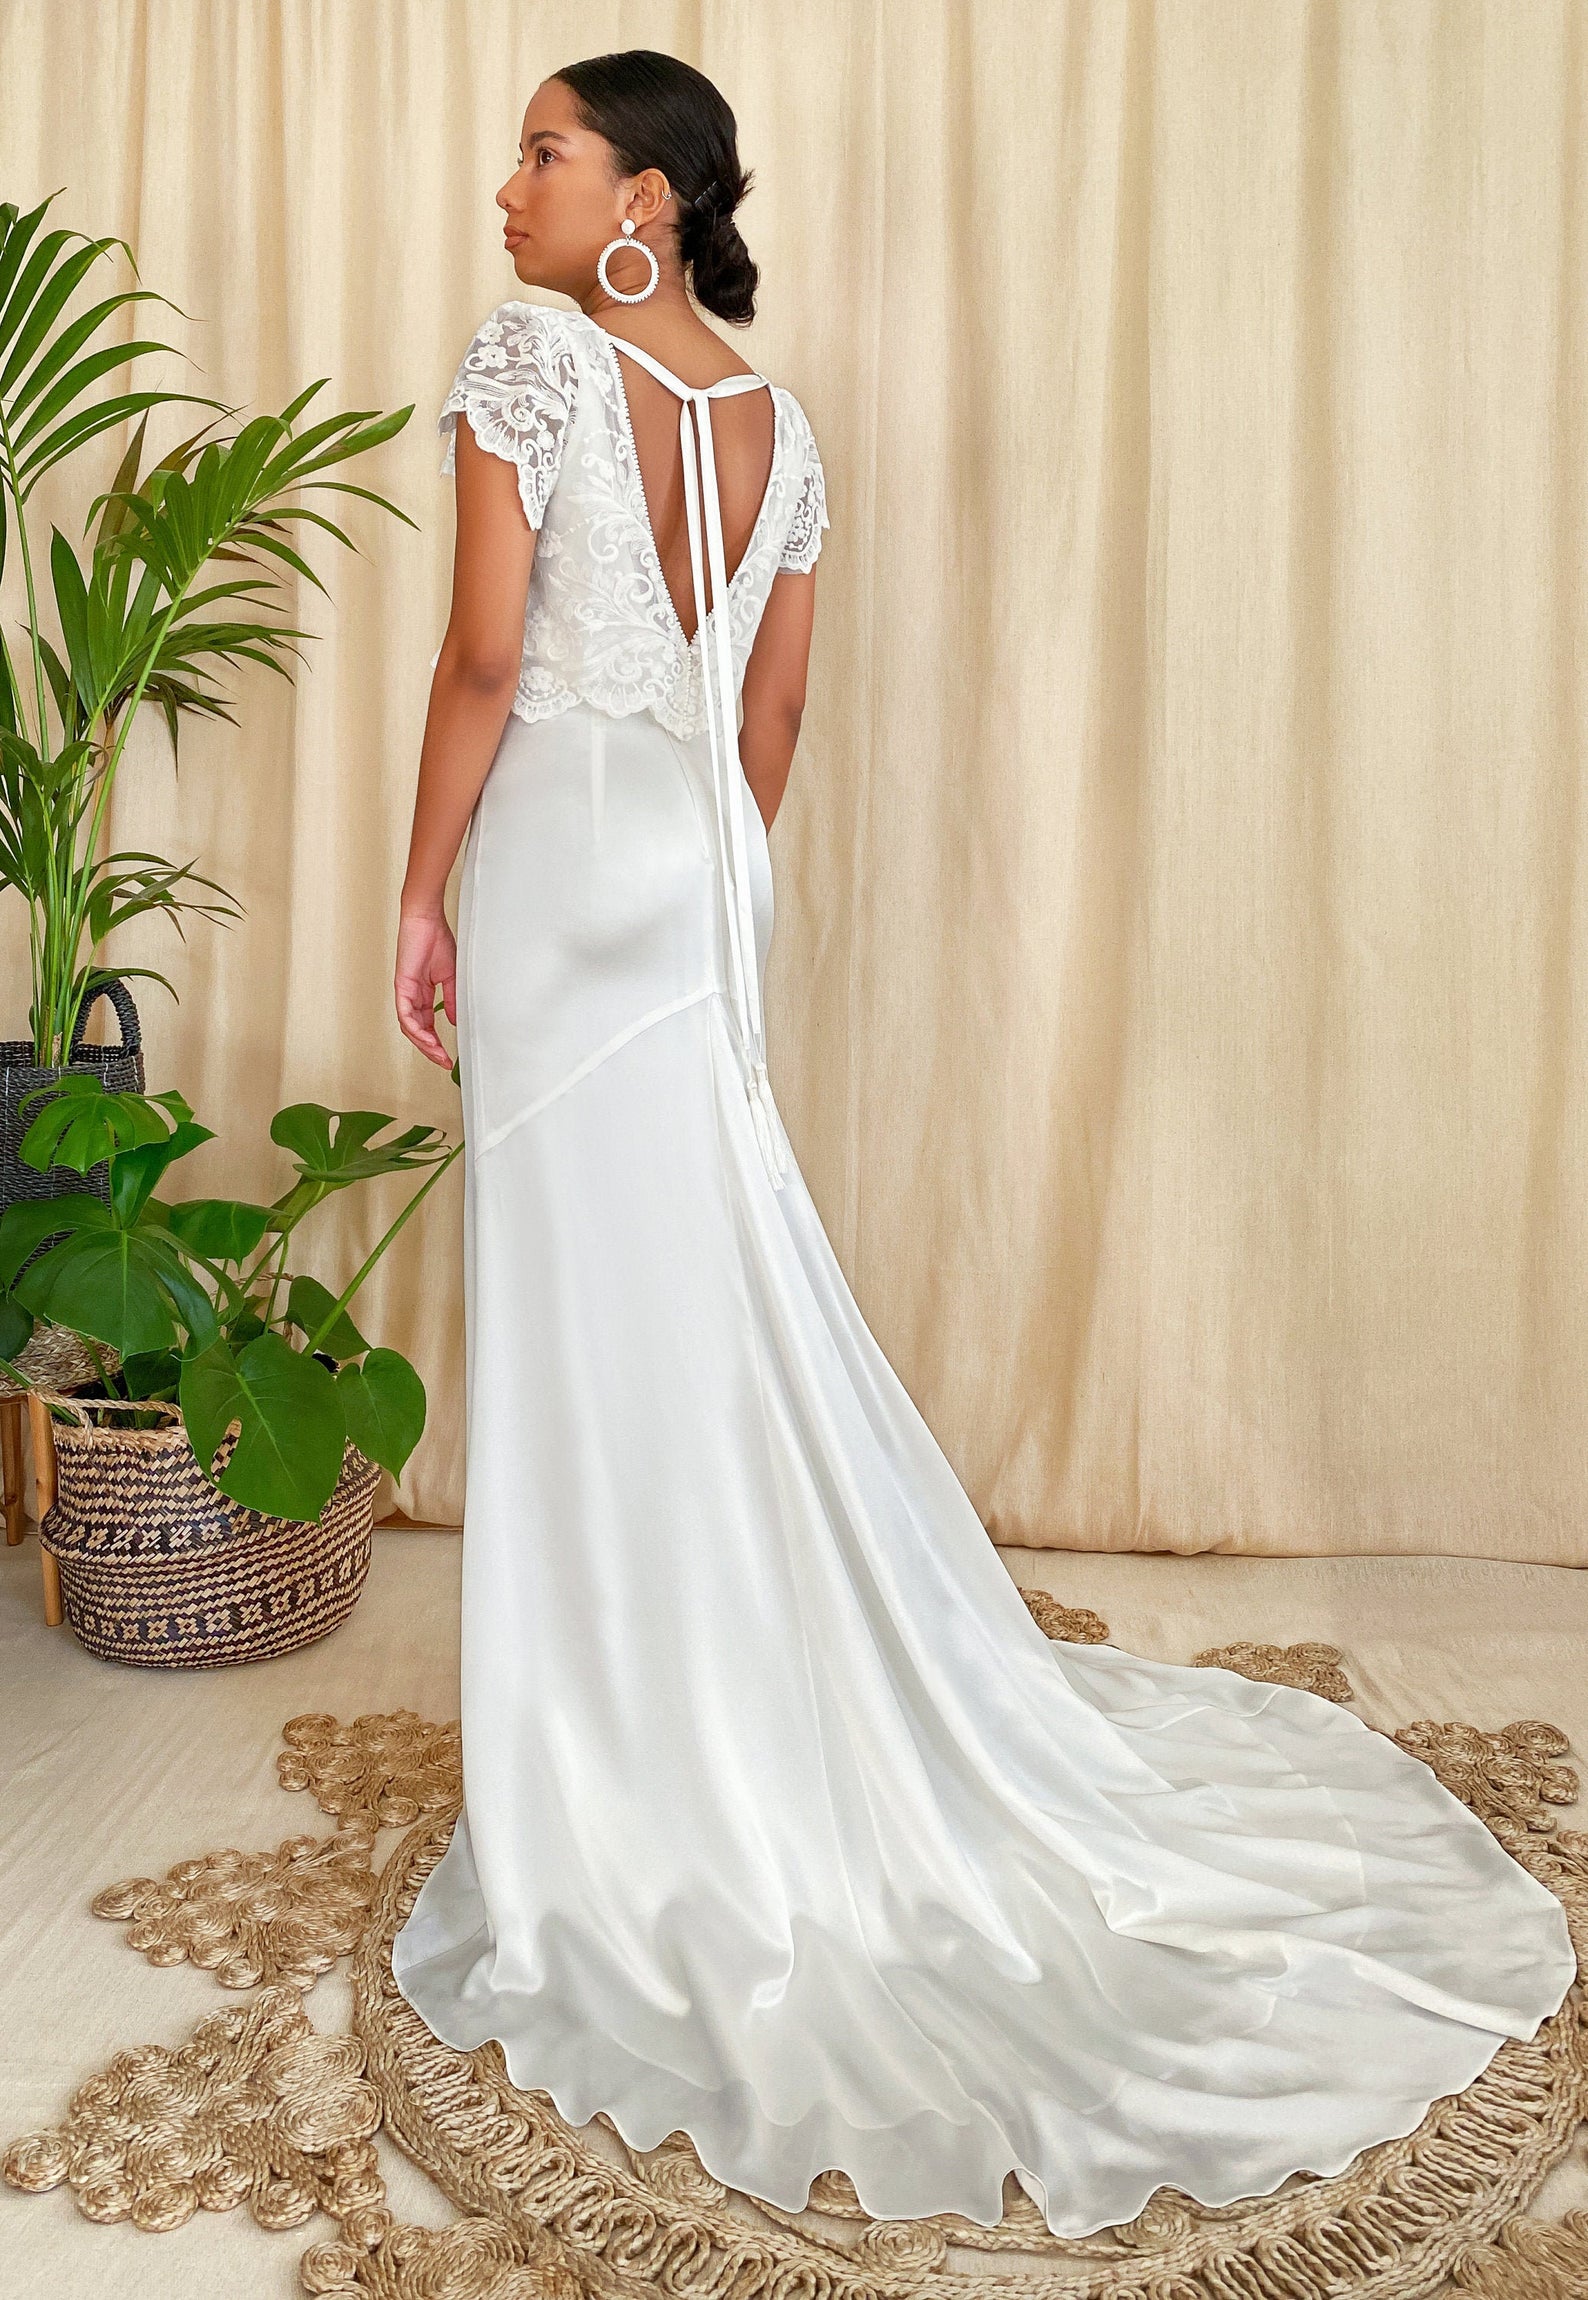 Bibiluxe Bridal Separates and Two Piece Wedding Dresses Bridal Musings - 35 chiếc váy cưới riêng biệt cho mọi phong cách của cô dâu